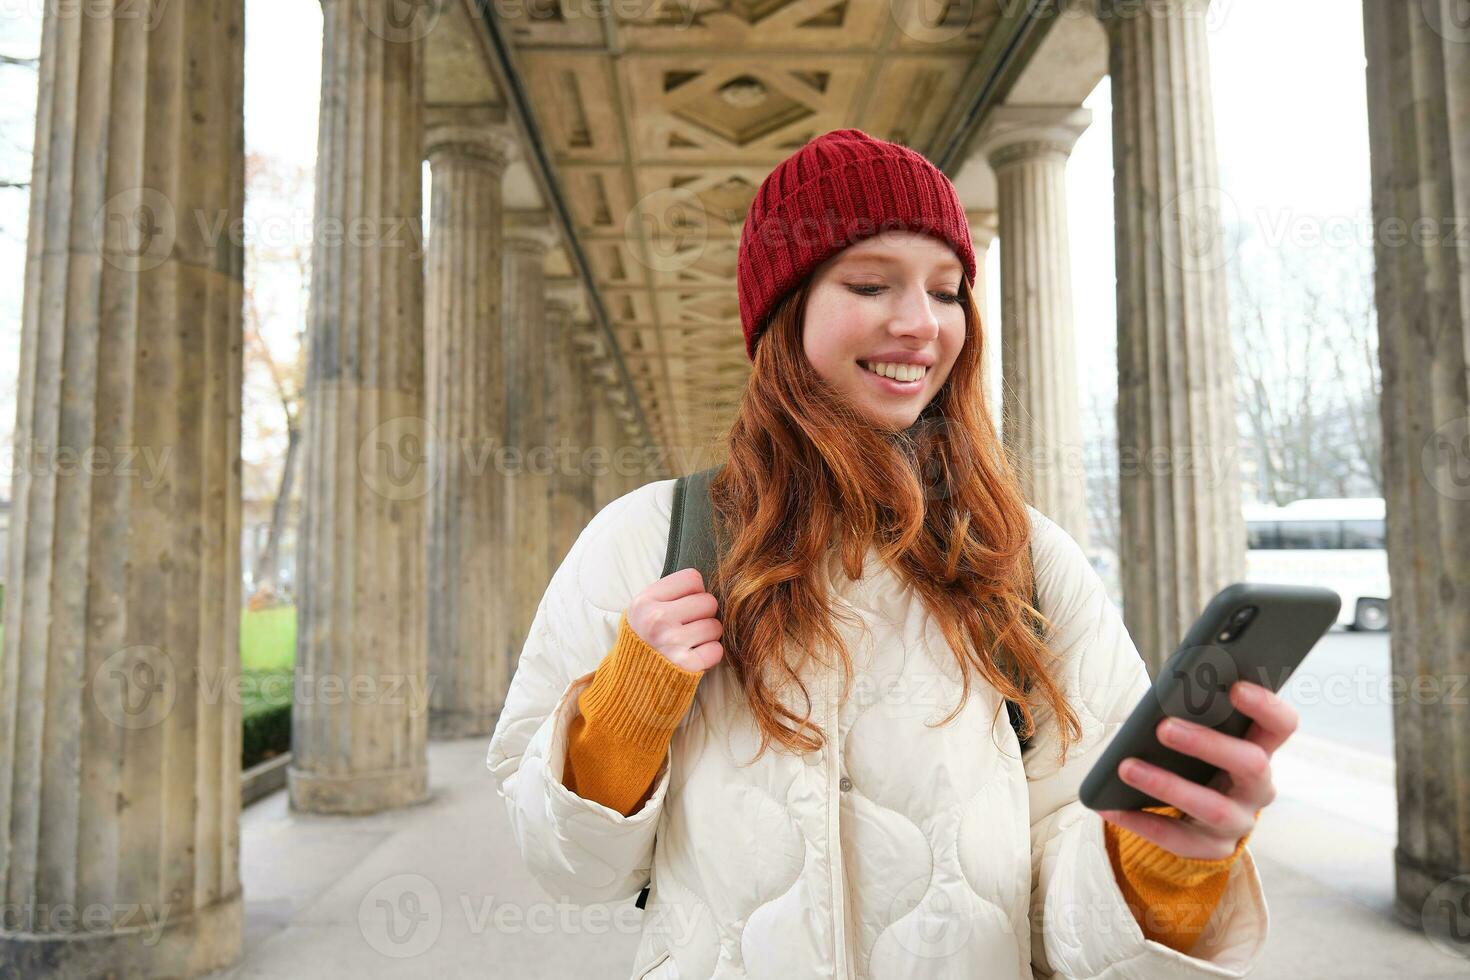 mobil bredband och människor. leende rödhårig 20s flicka med ryggsäck, användningar smartphone på gata, innehar mobil telefon och utseende på Ansökan foto